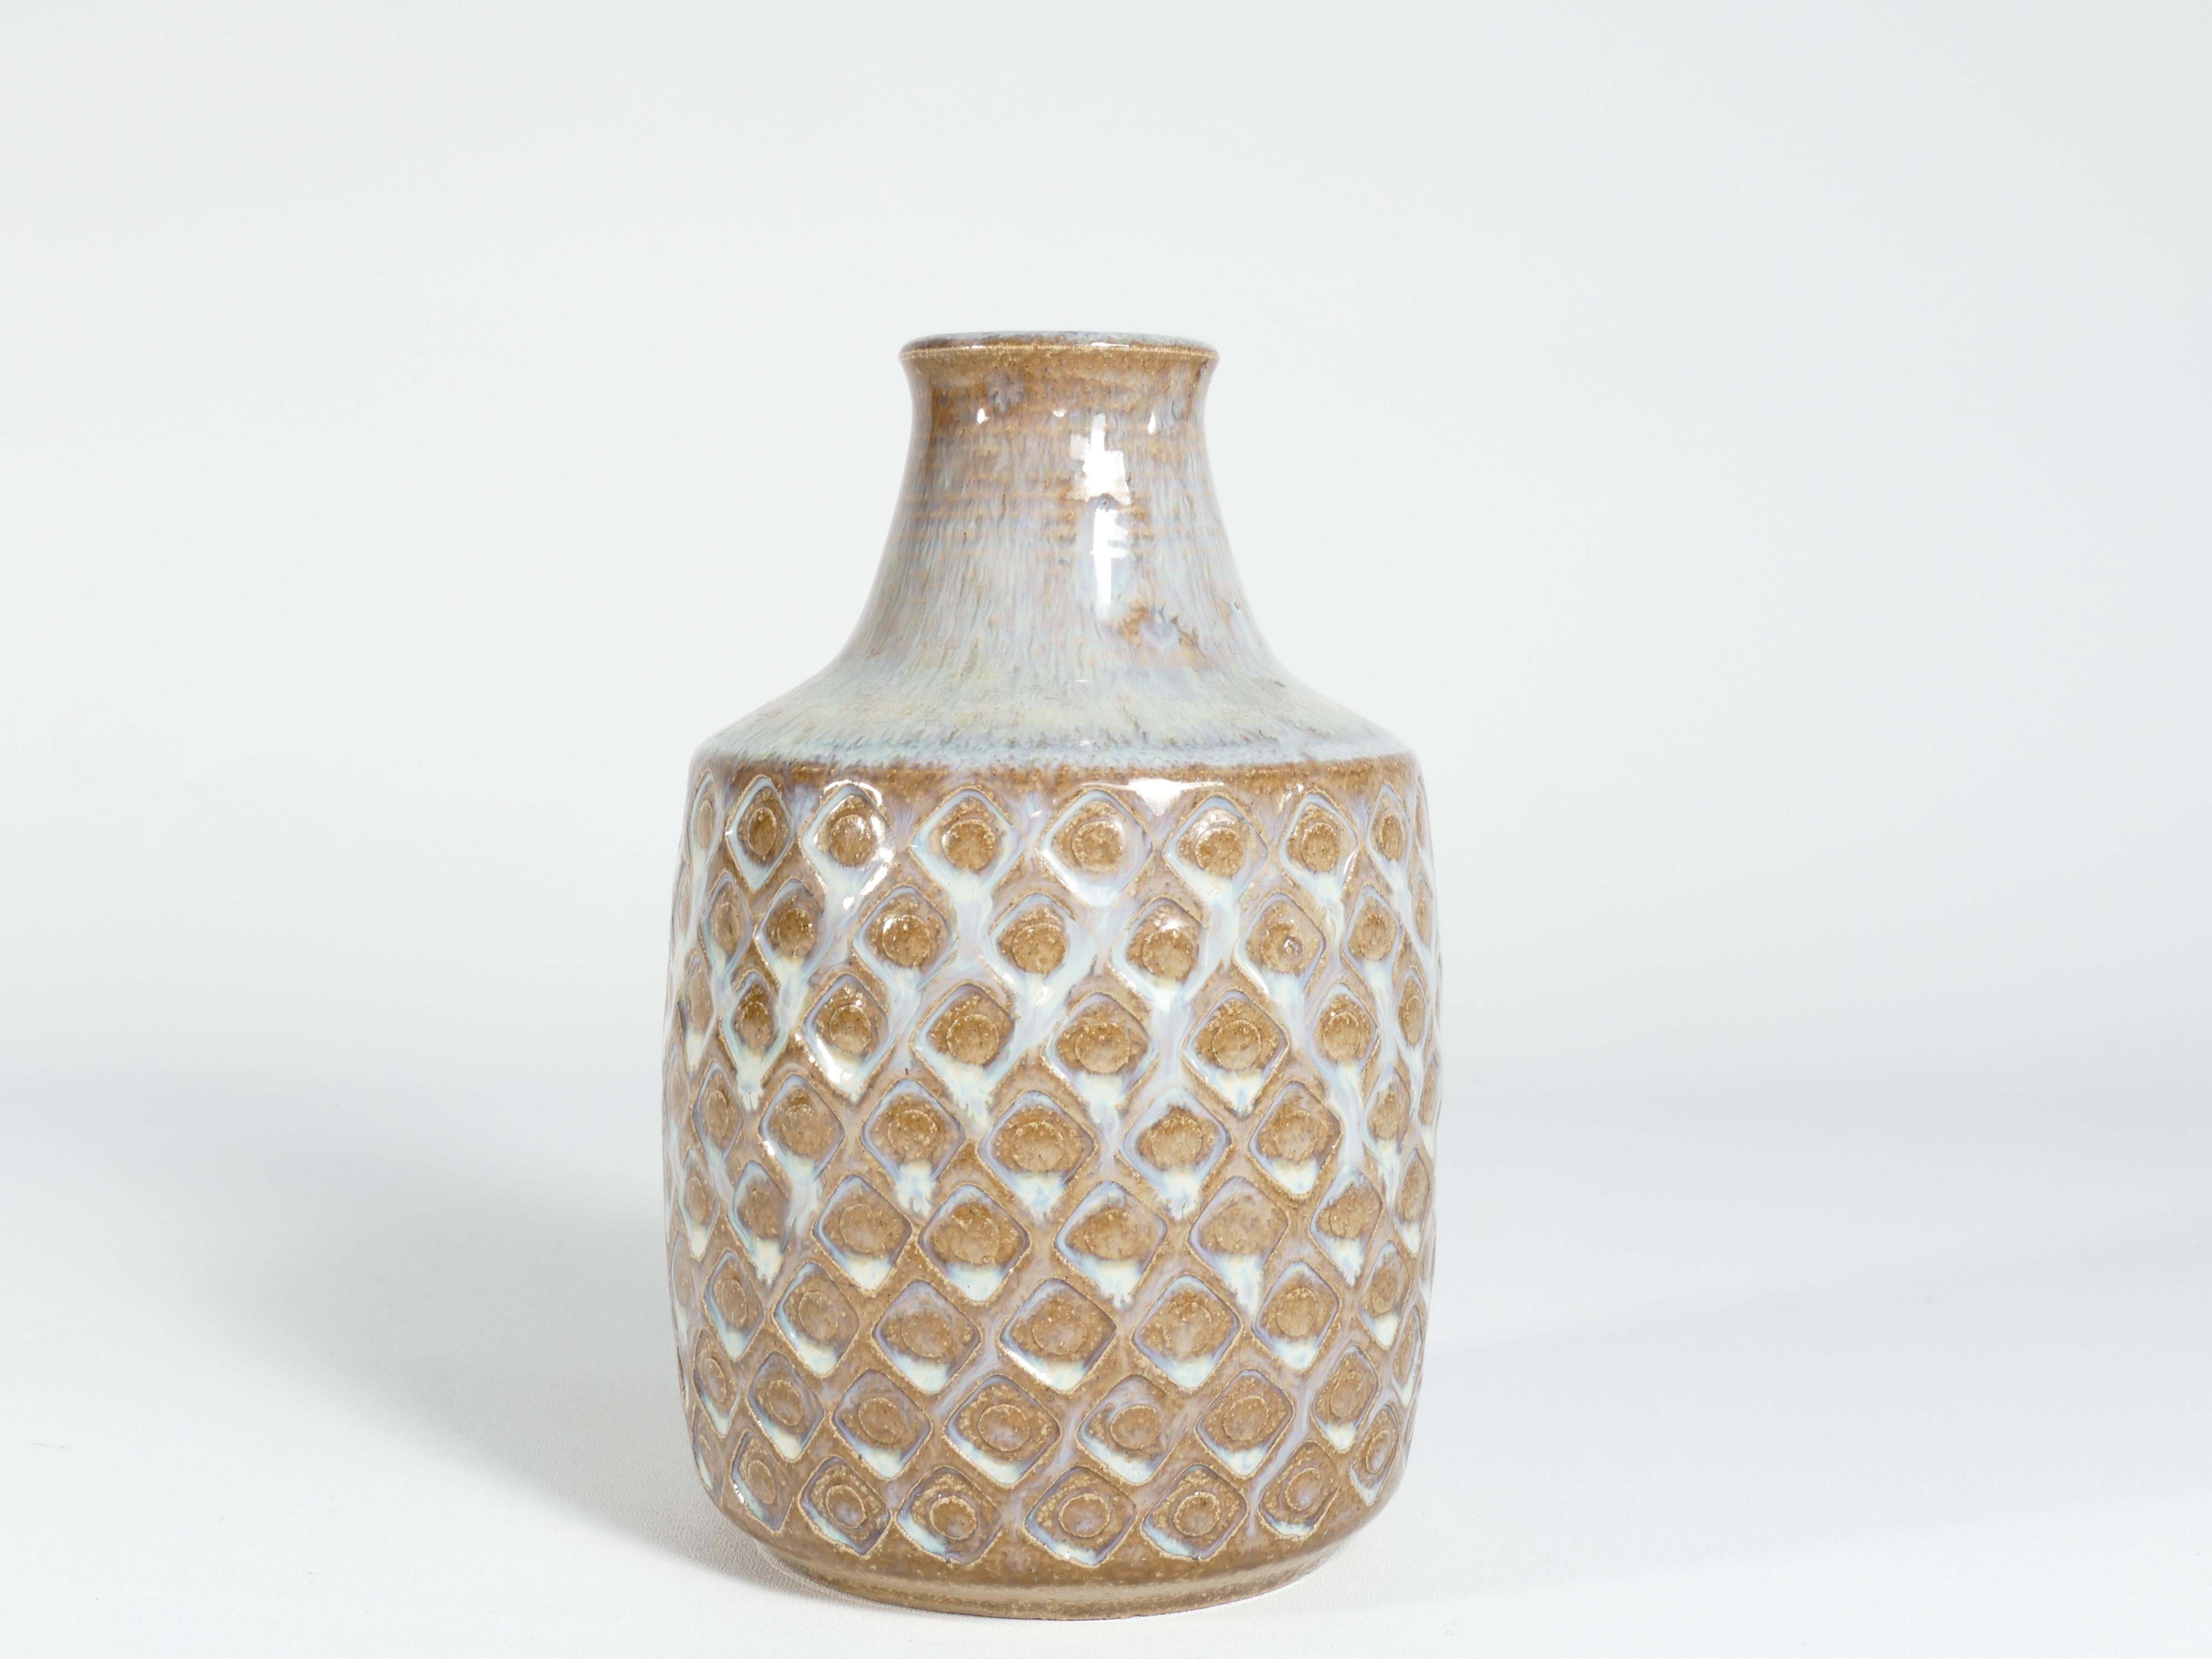 Diese exquisite Vase aus Steinzeug wurde Mitte des 20. Jahrhunderts handgefertigt und trägt die unverwechselbare Marke Søholm Stentøj. Diese Vase, die von der renommierten dänischen Firma Soholm Stentoj auf der malerischen Insel Bornholm hergestellt